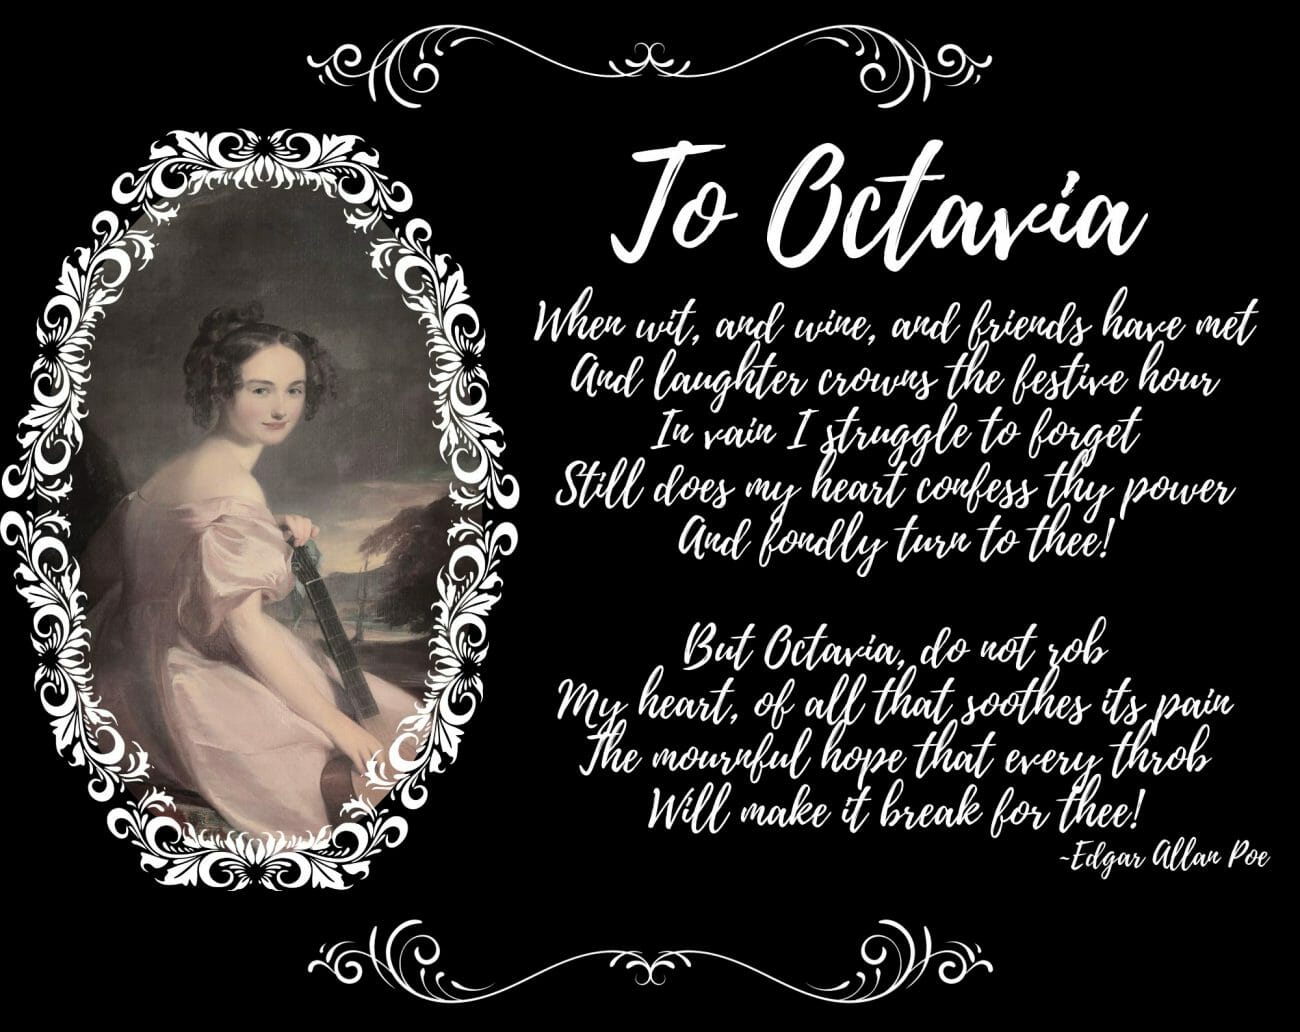 "To Octavia"